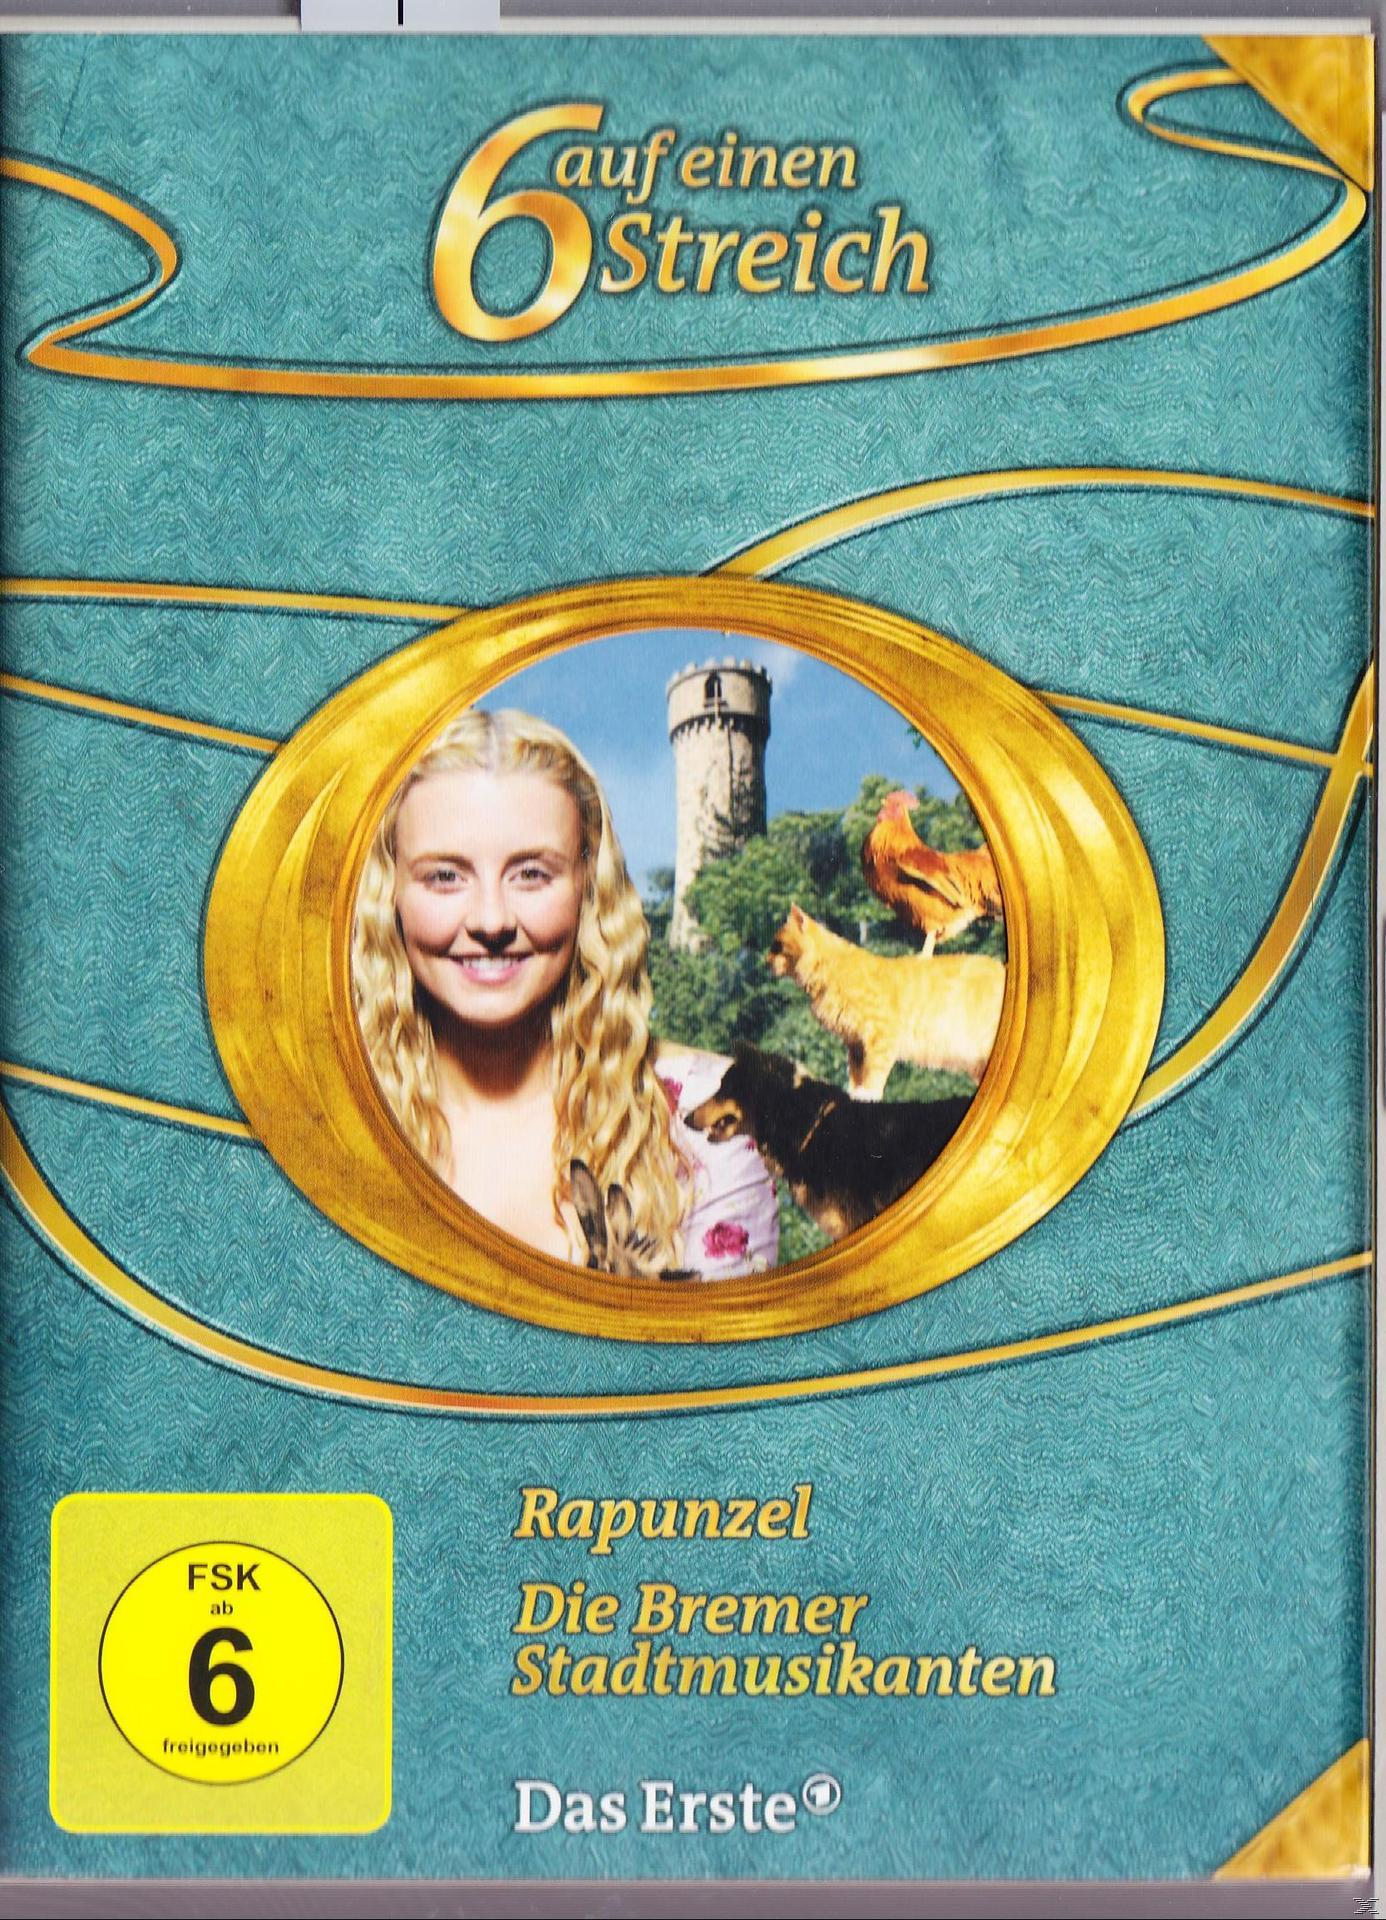 MÄRCHENBOX - SECHS AUF EINEN 5 STREICH (O-CARD) DVD